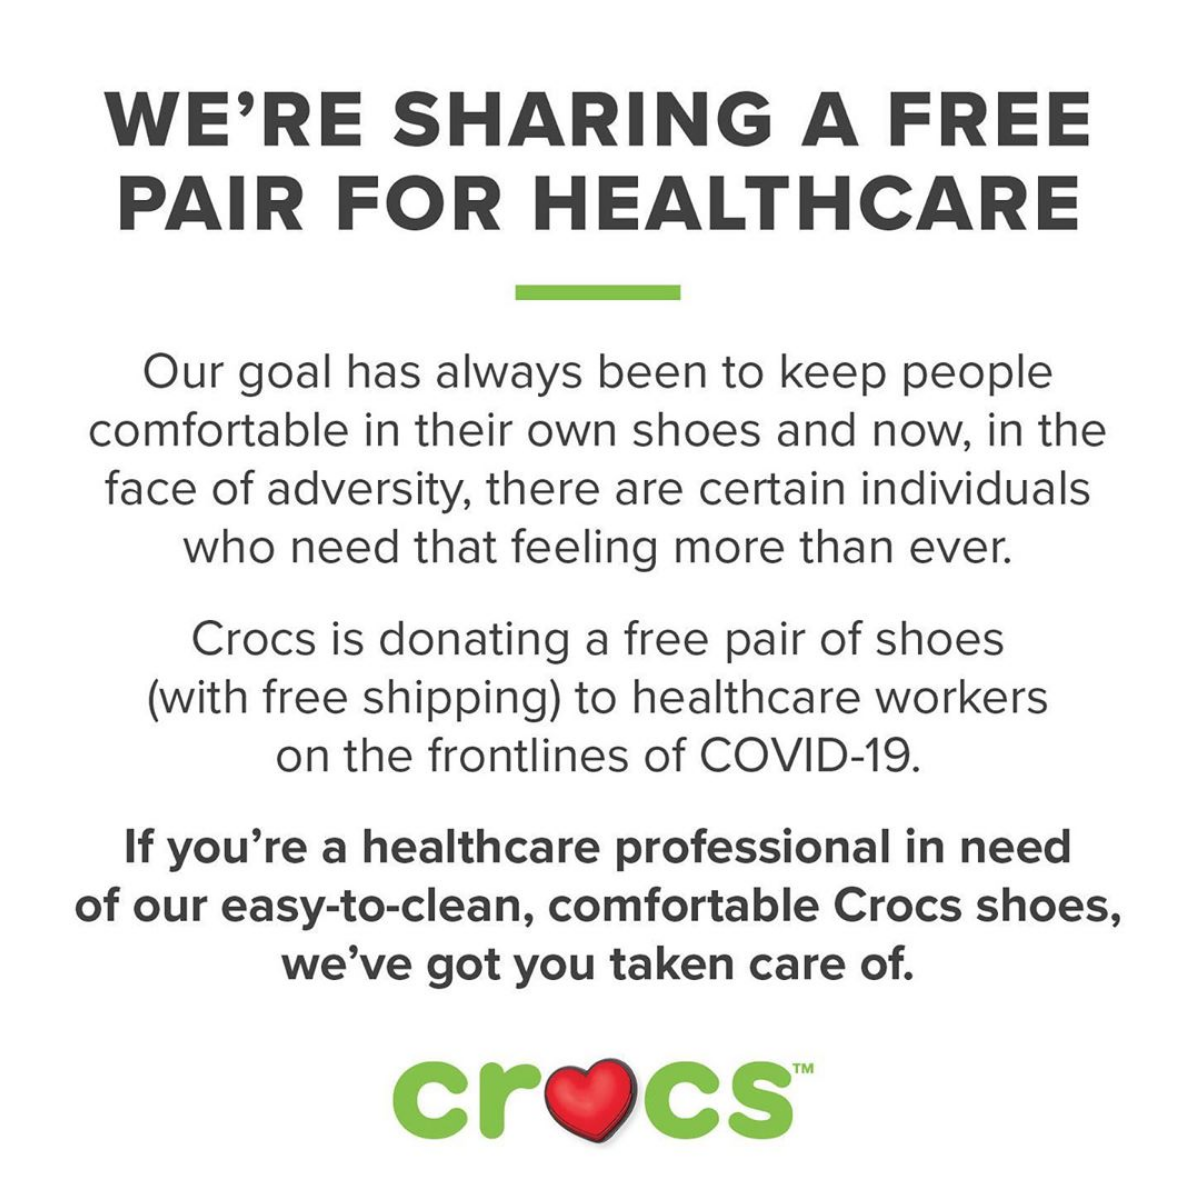 free crocs offer